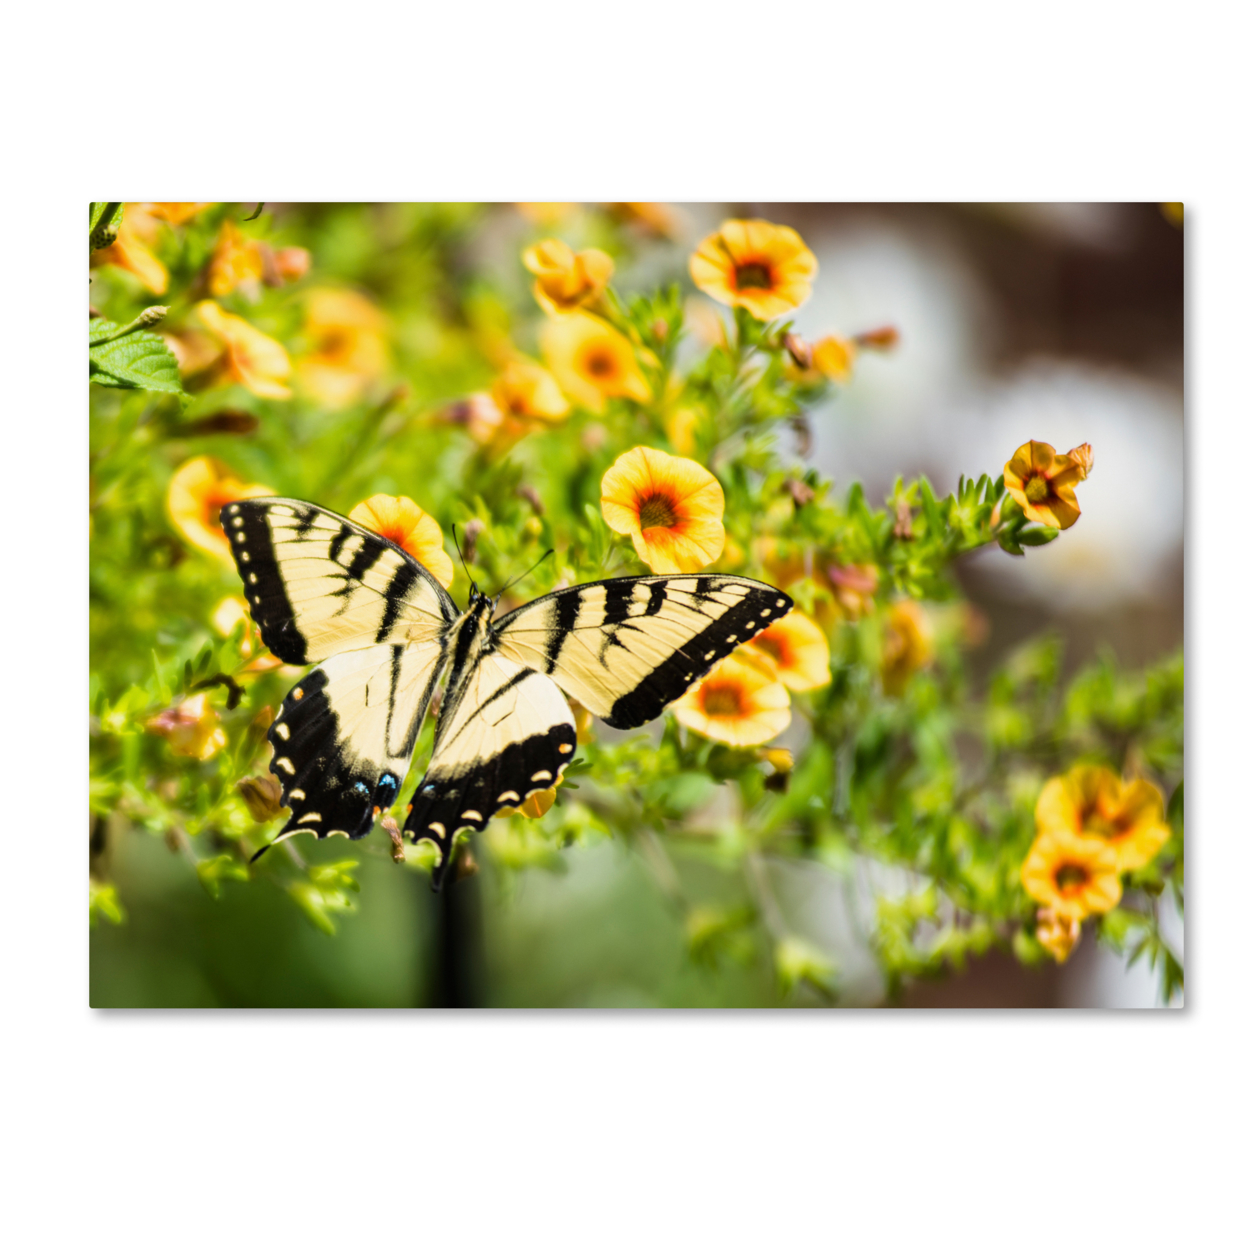 Kurt Shaffer 'Swallowtail Butterfly' Canvas Art